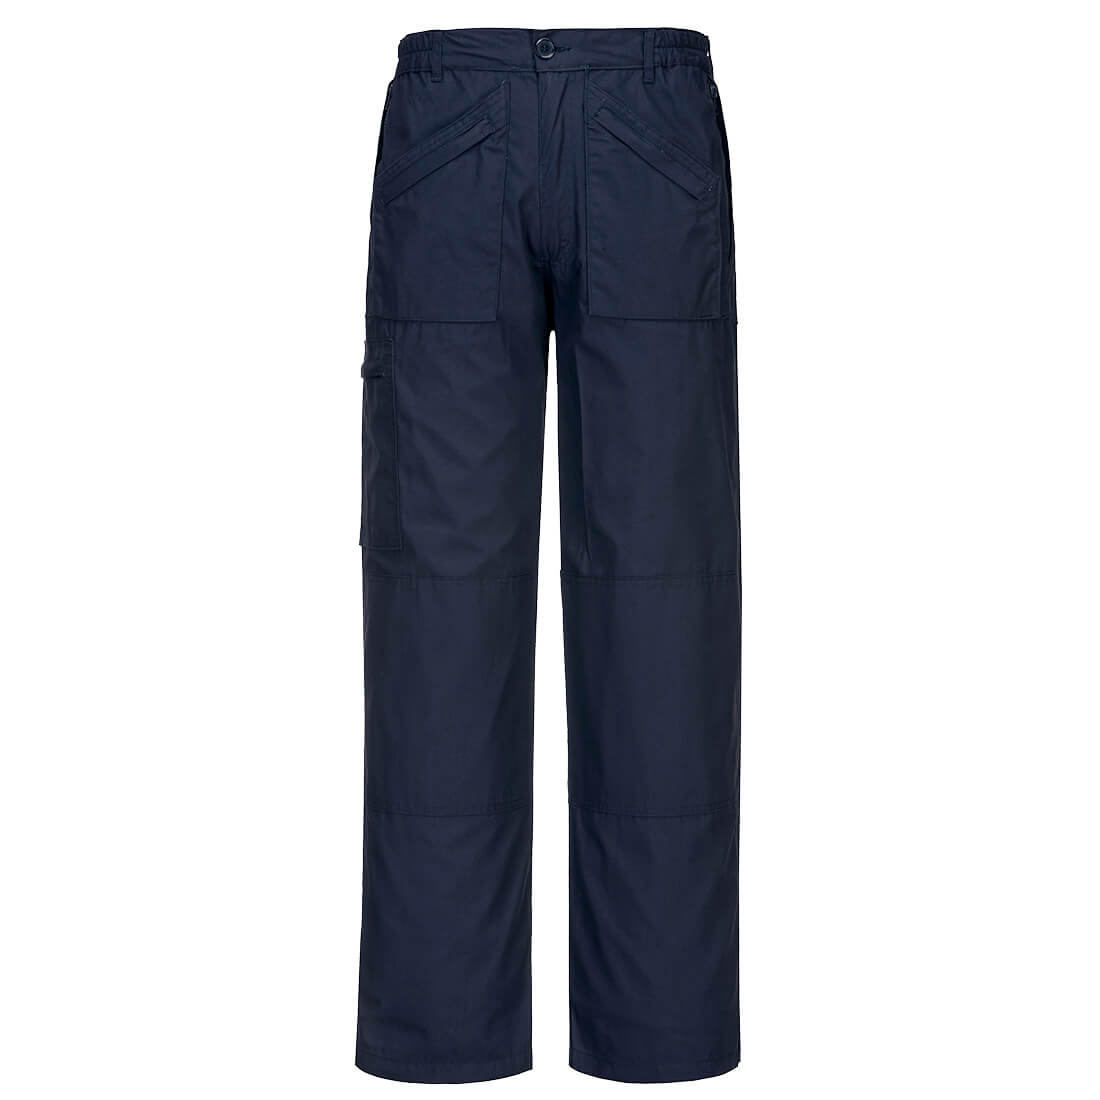 Kalhoty Classic Action s Texpel úpravou Barva: námořní modrá, Velikost: S